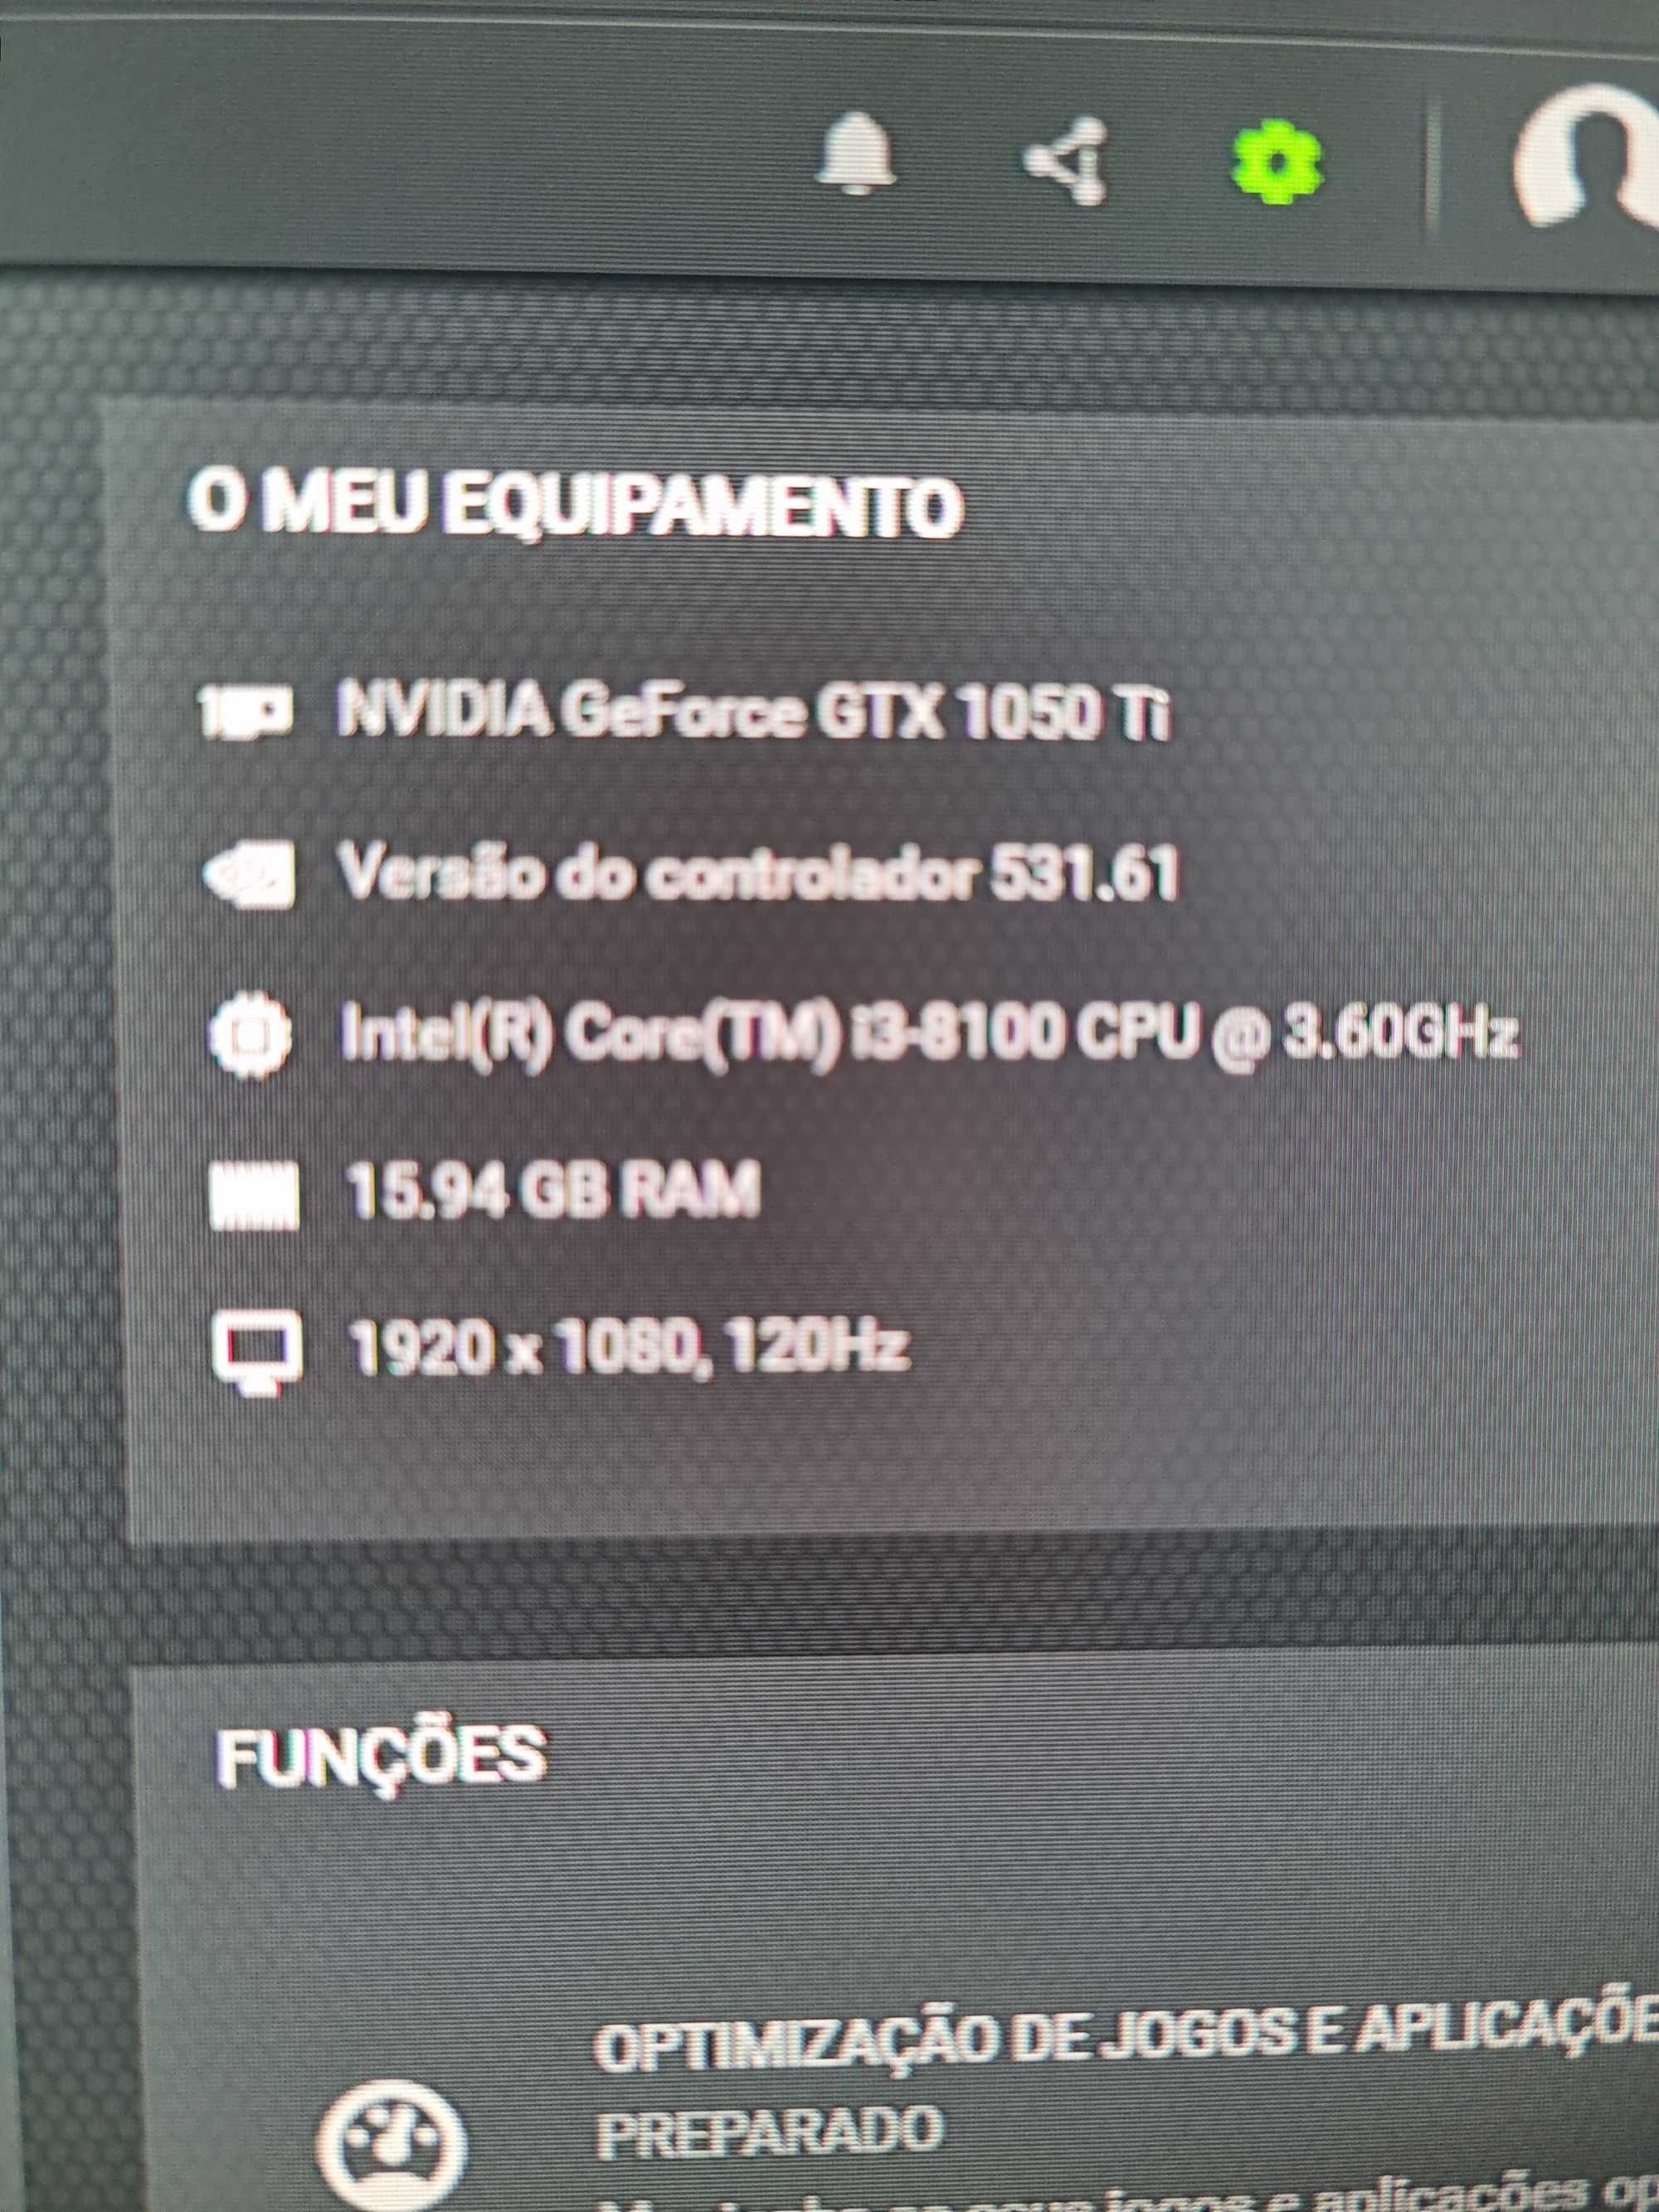 Fortnite Conta - Computadores - OLX Portugal